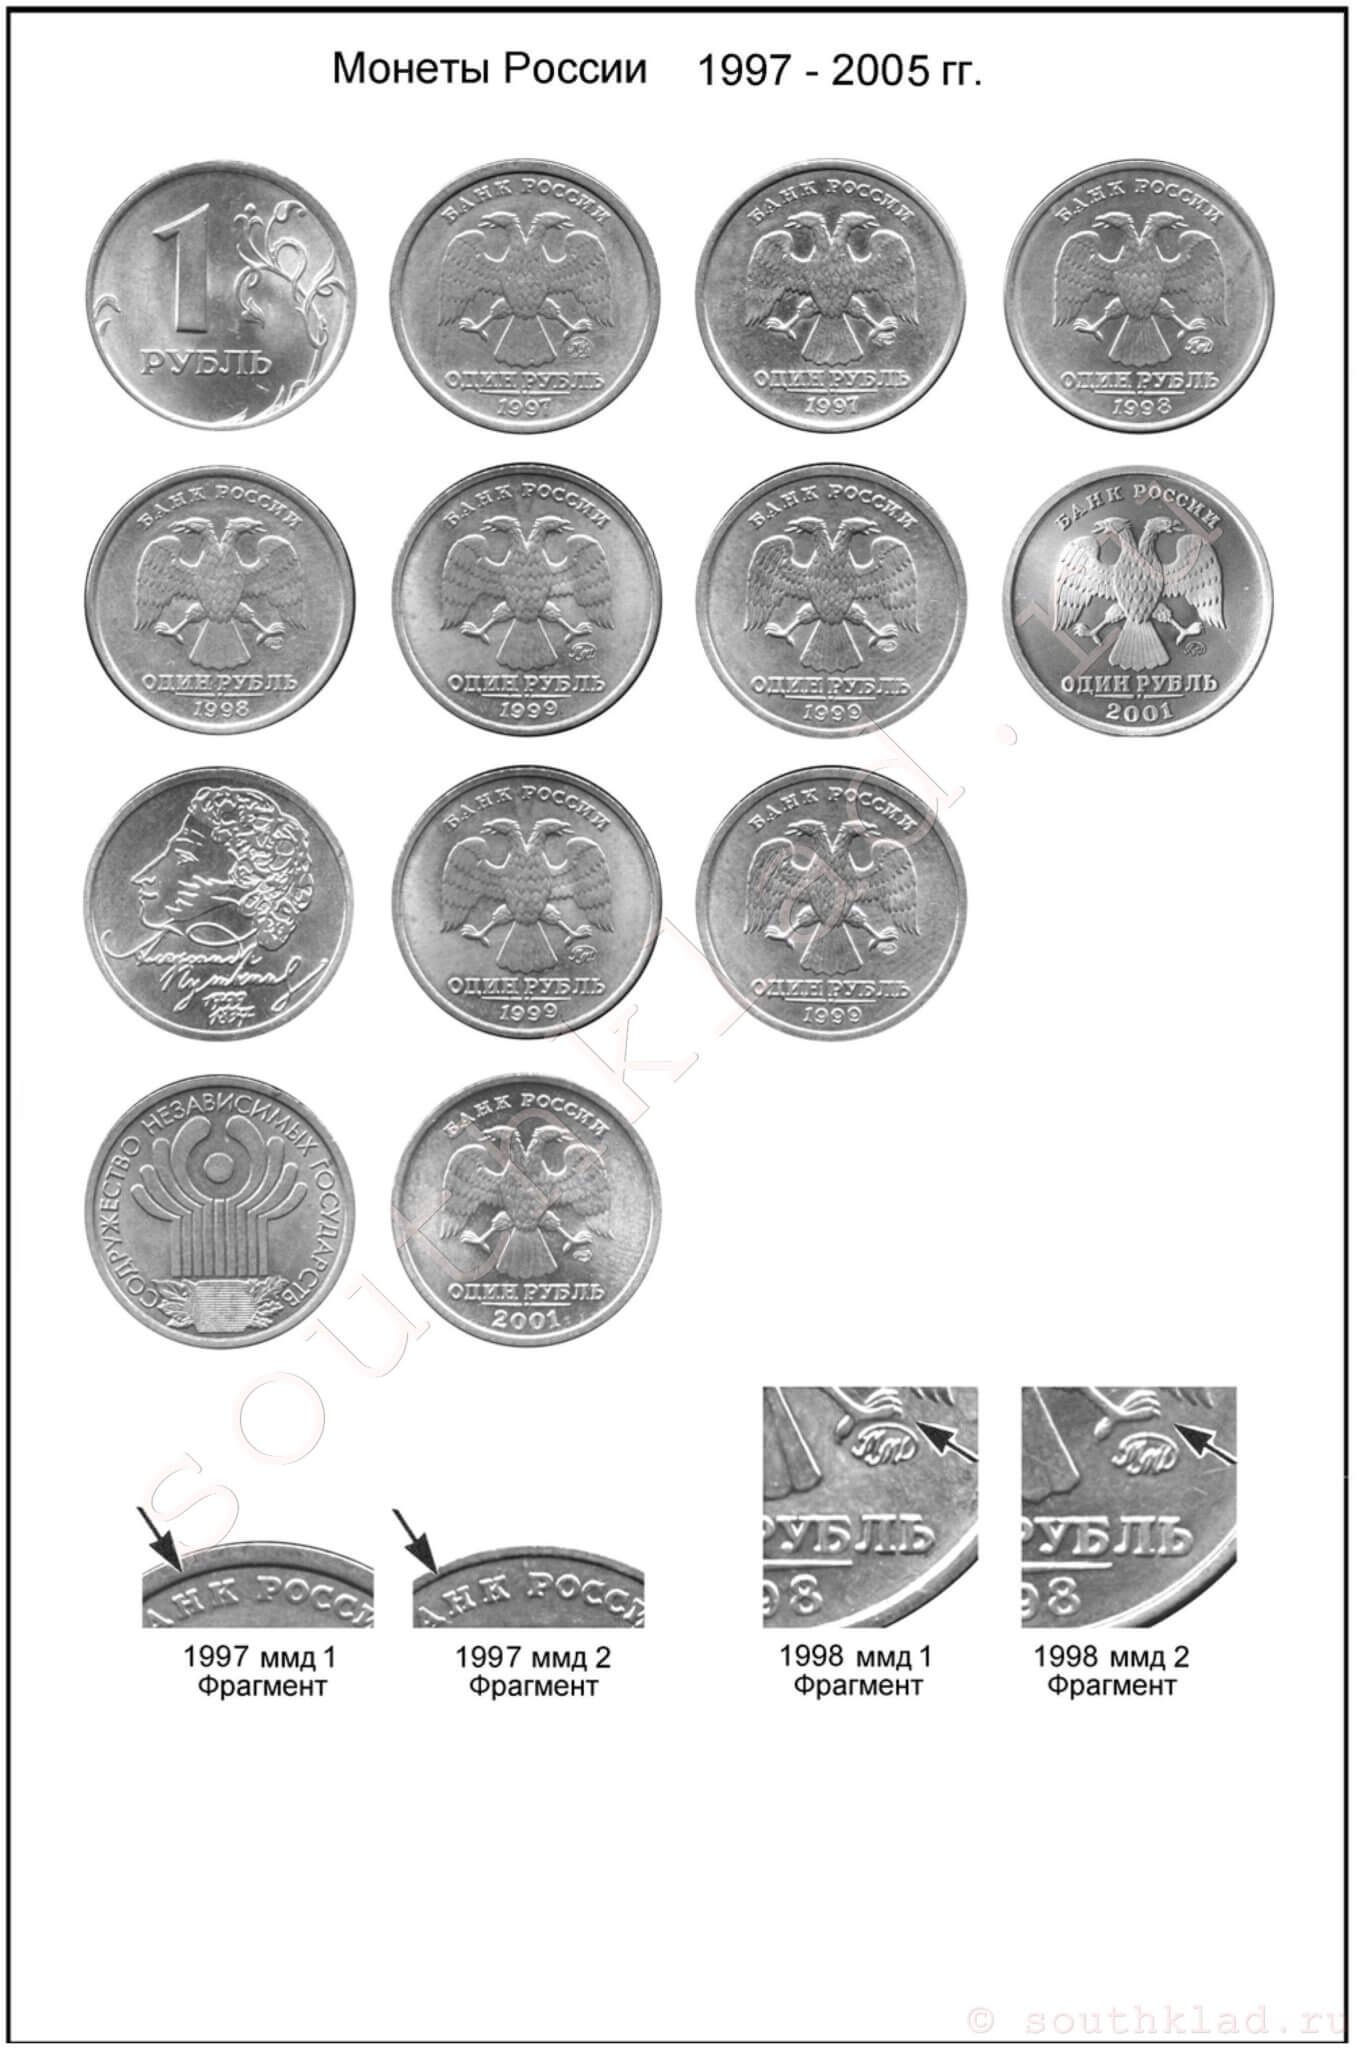 1 рубль. Монеты России образца 1997 года